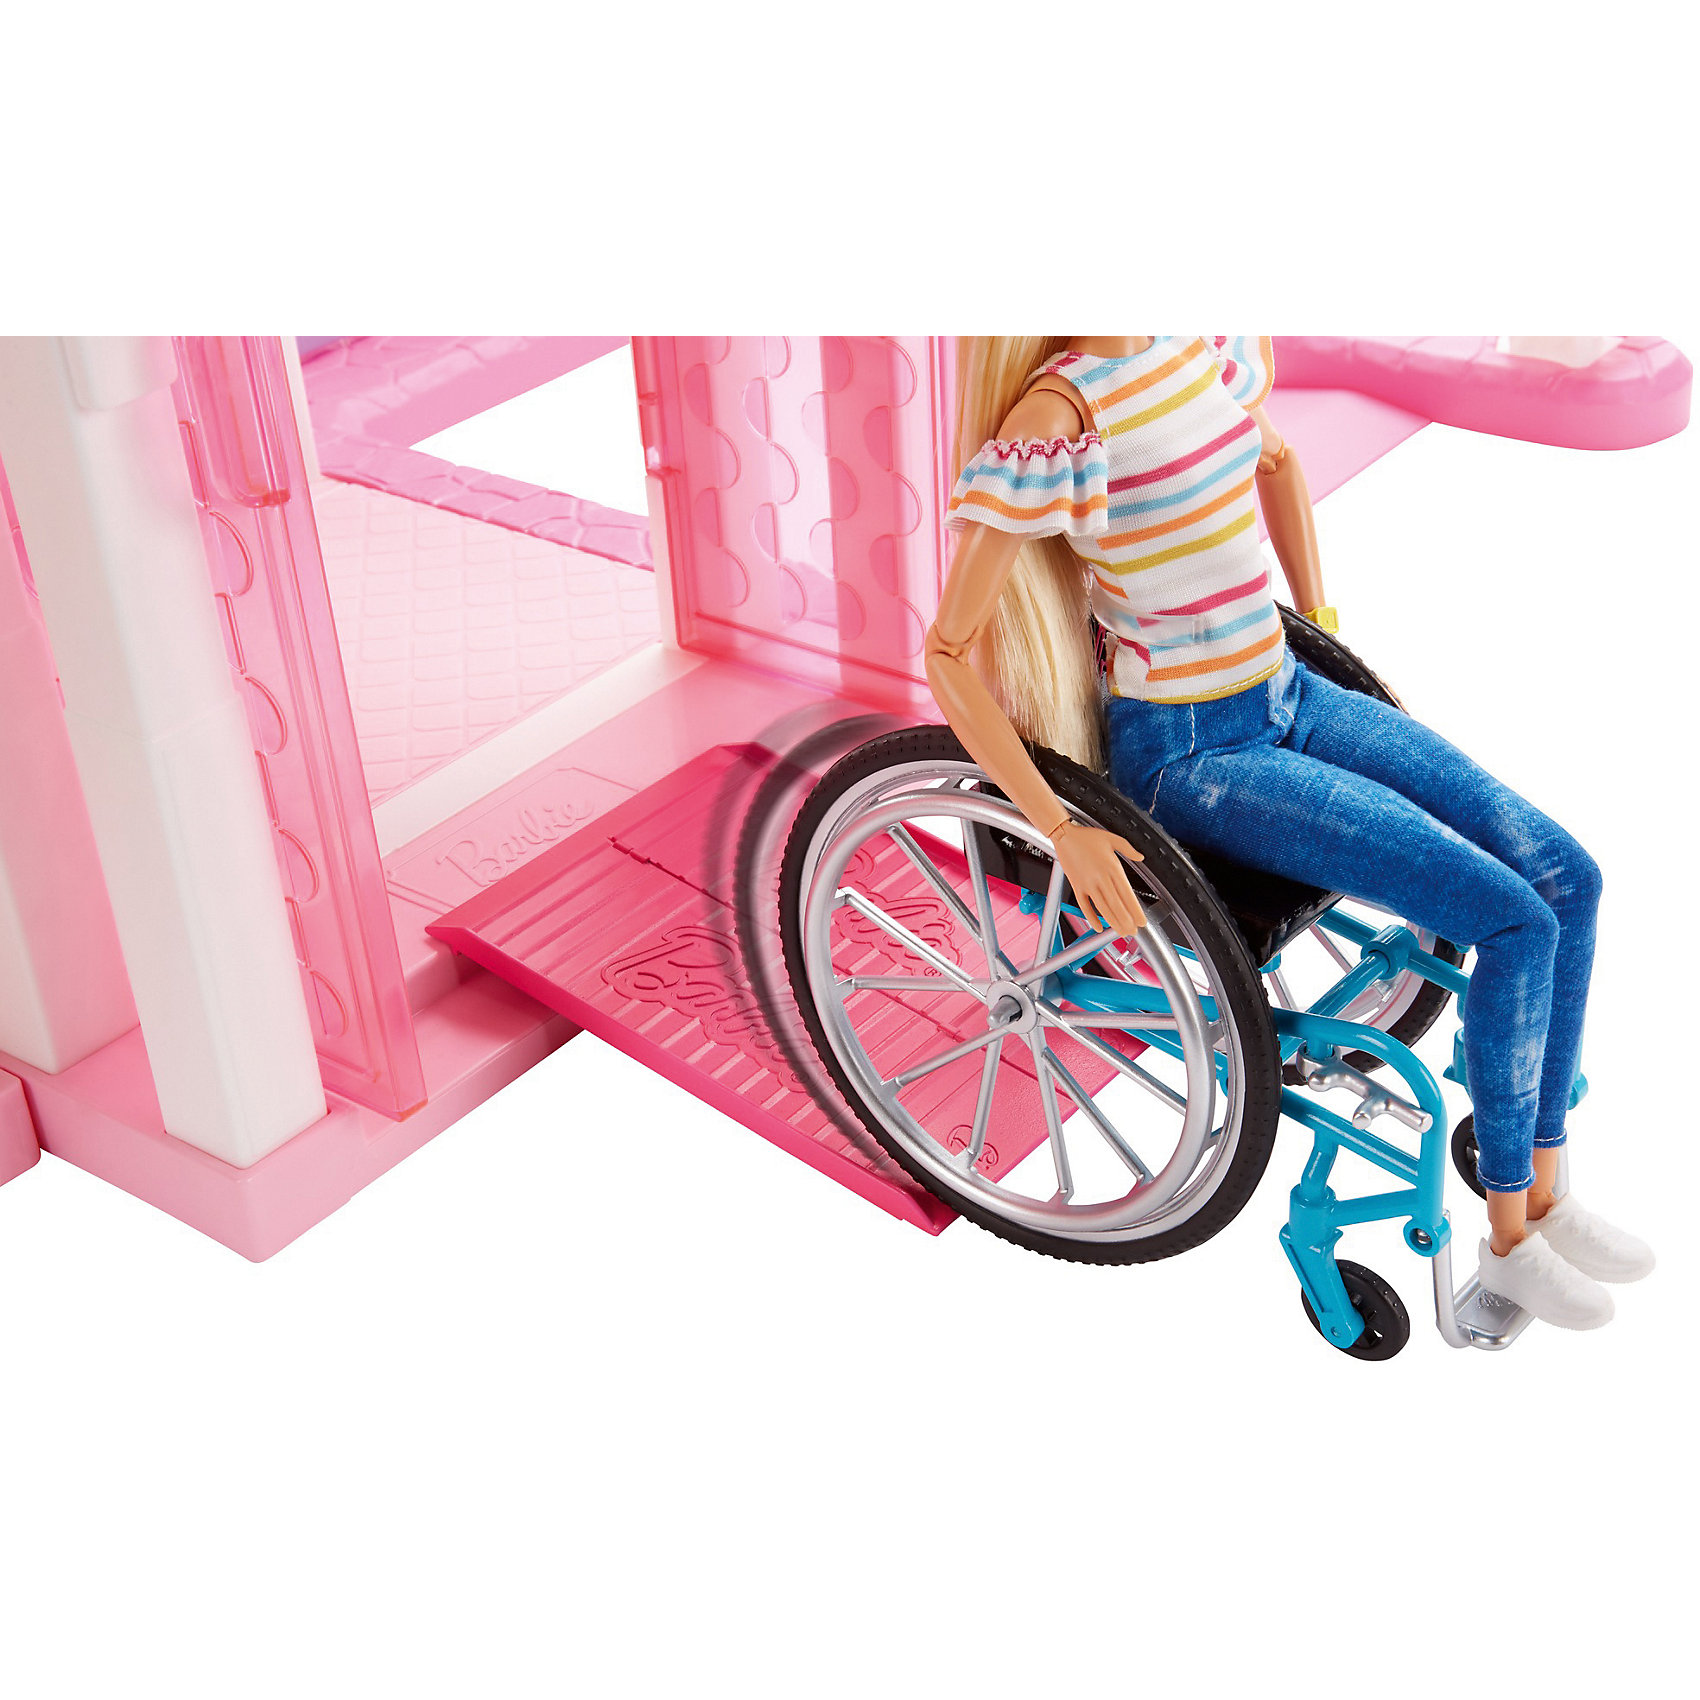 Кукла Barbie Fashionistas в инвалидной коляске, ggl22